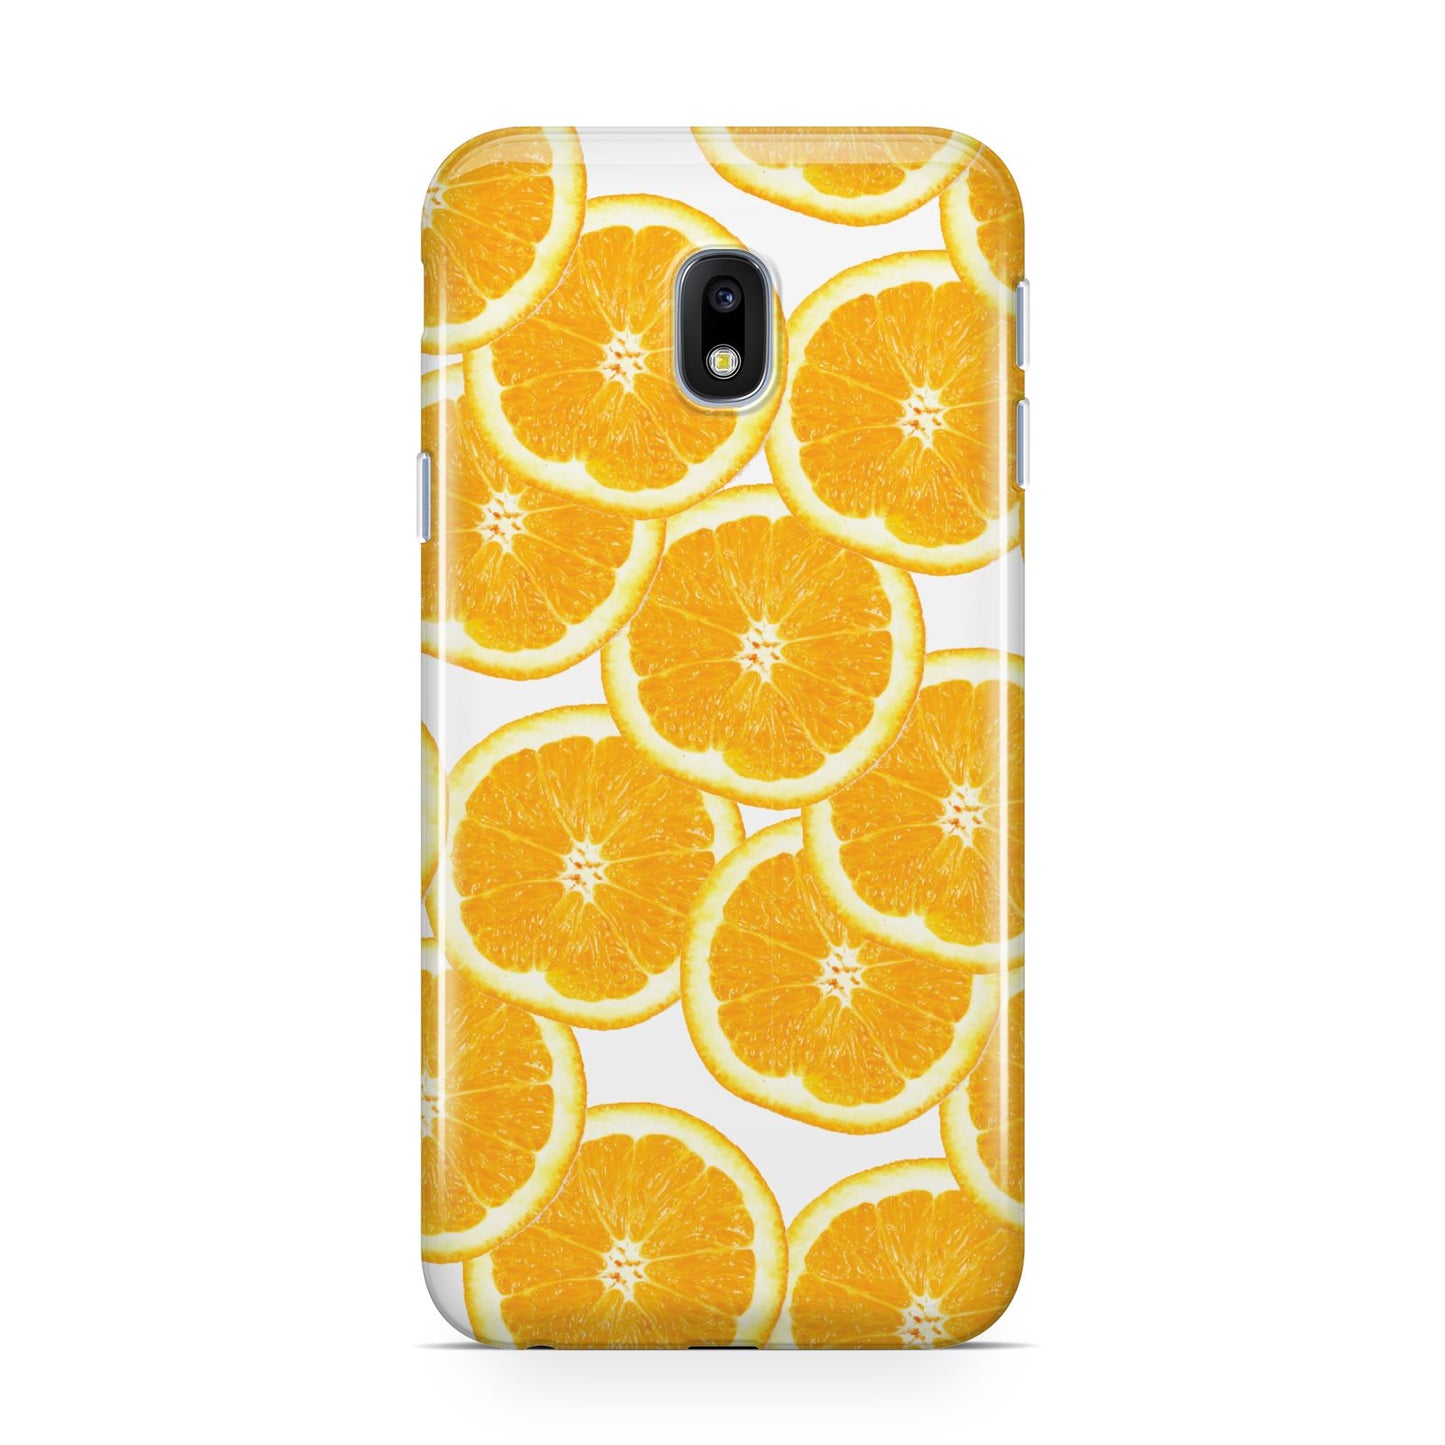 Orange Fruit Slices Samsung Galaxy J3 2017 Case